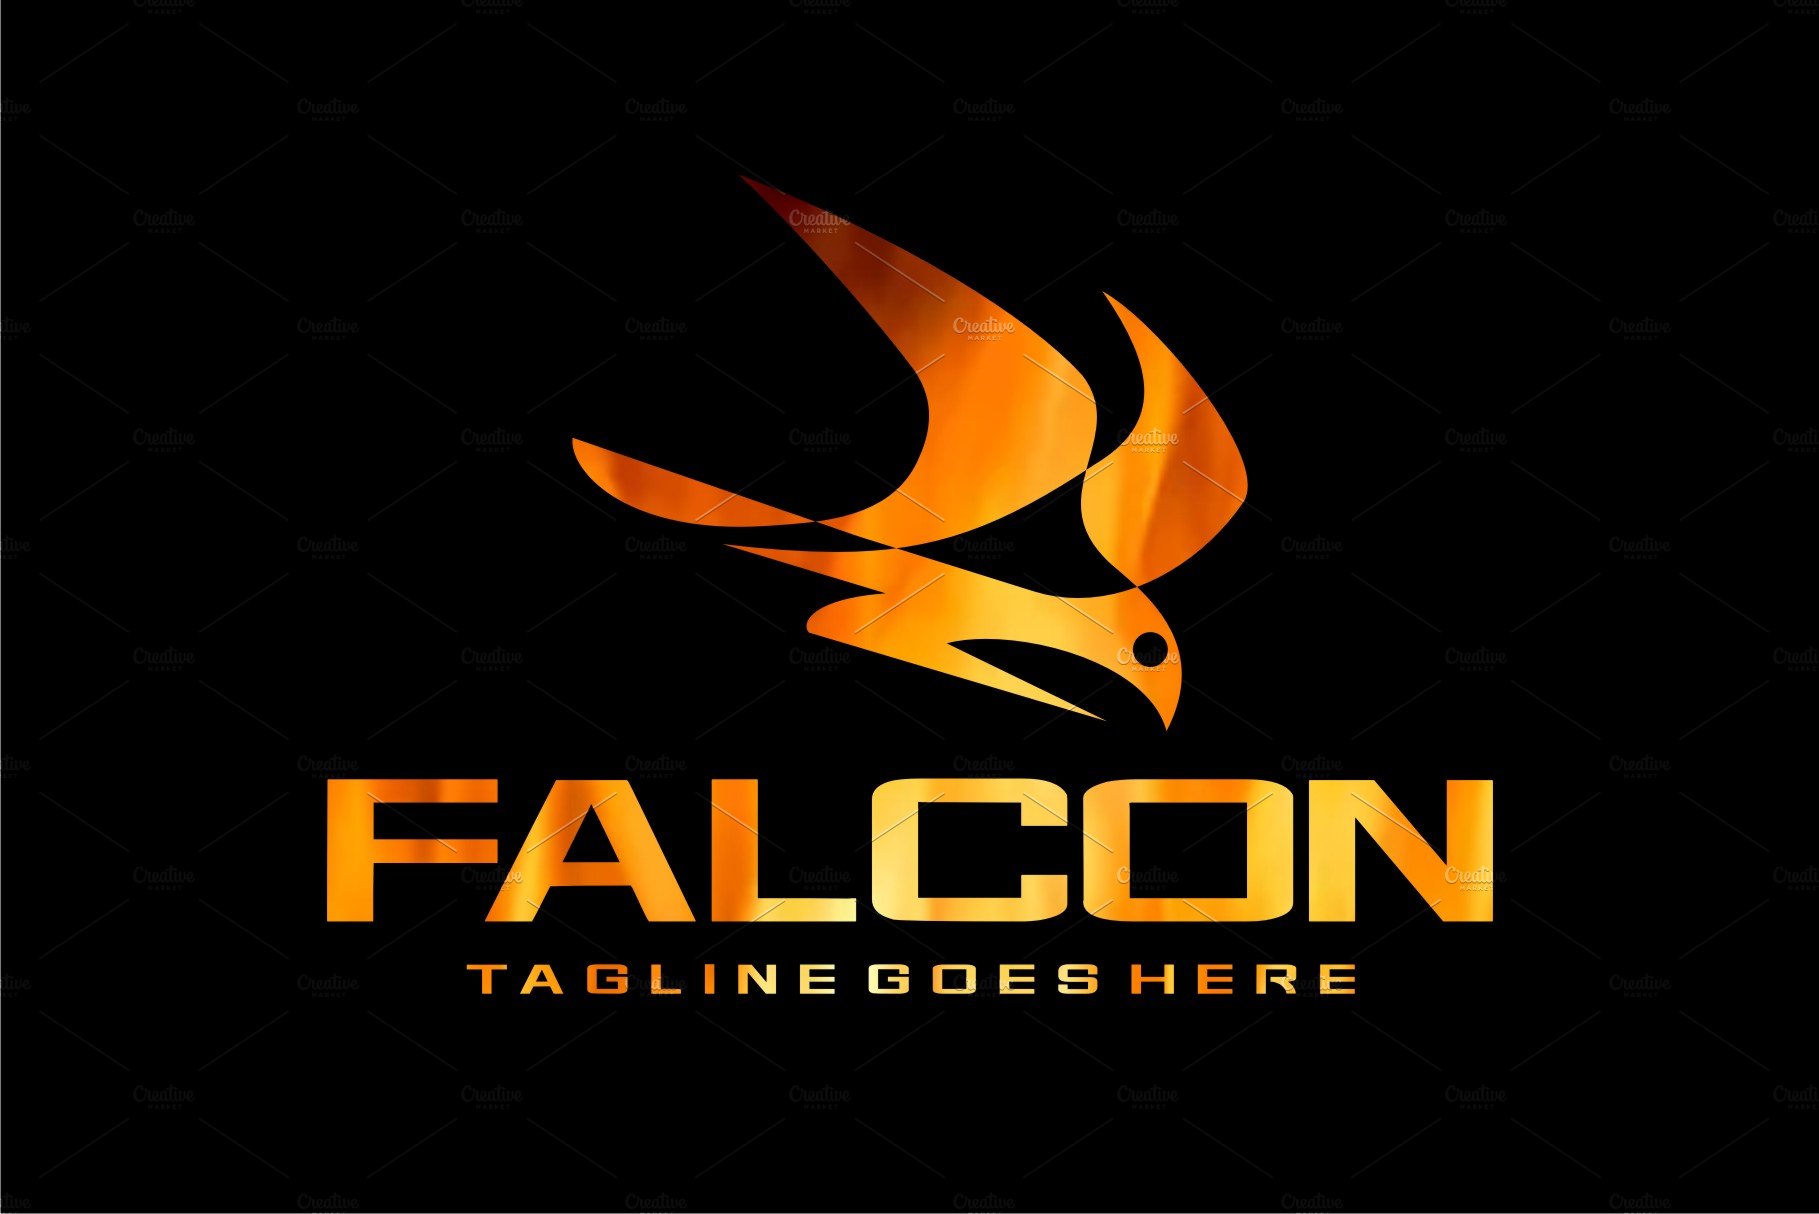 Falcon cover image.